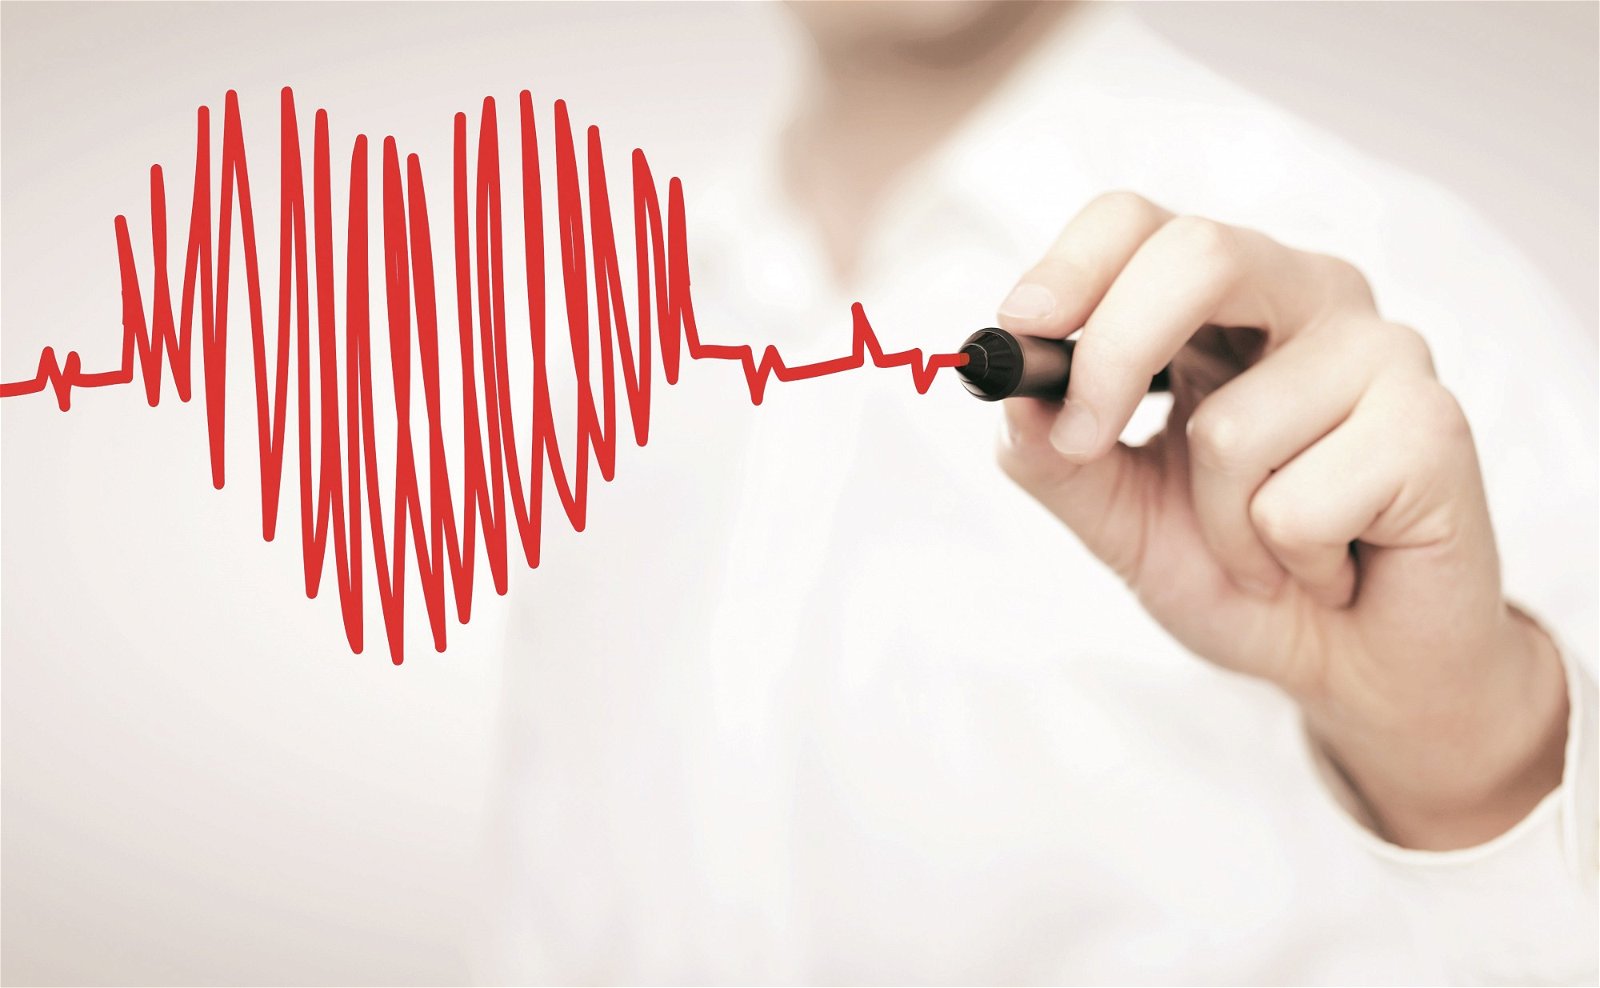 心脏衰竭是一种导致身体虚弱的致命性潜在疾病。这种疾病是由于心脏肌肉变得衰弱，导致心脏无法把足够的血液输送到身体各个器官而引起的。